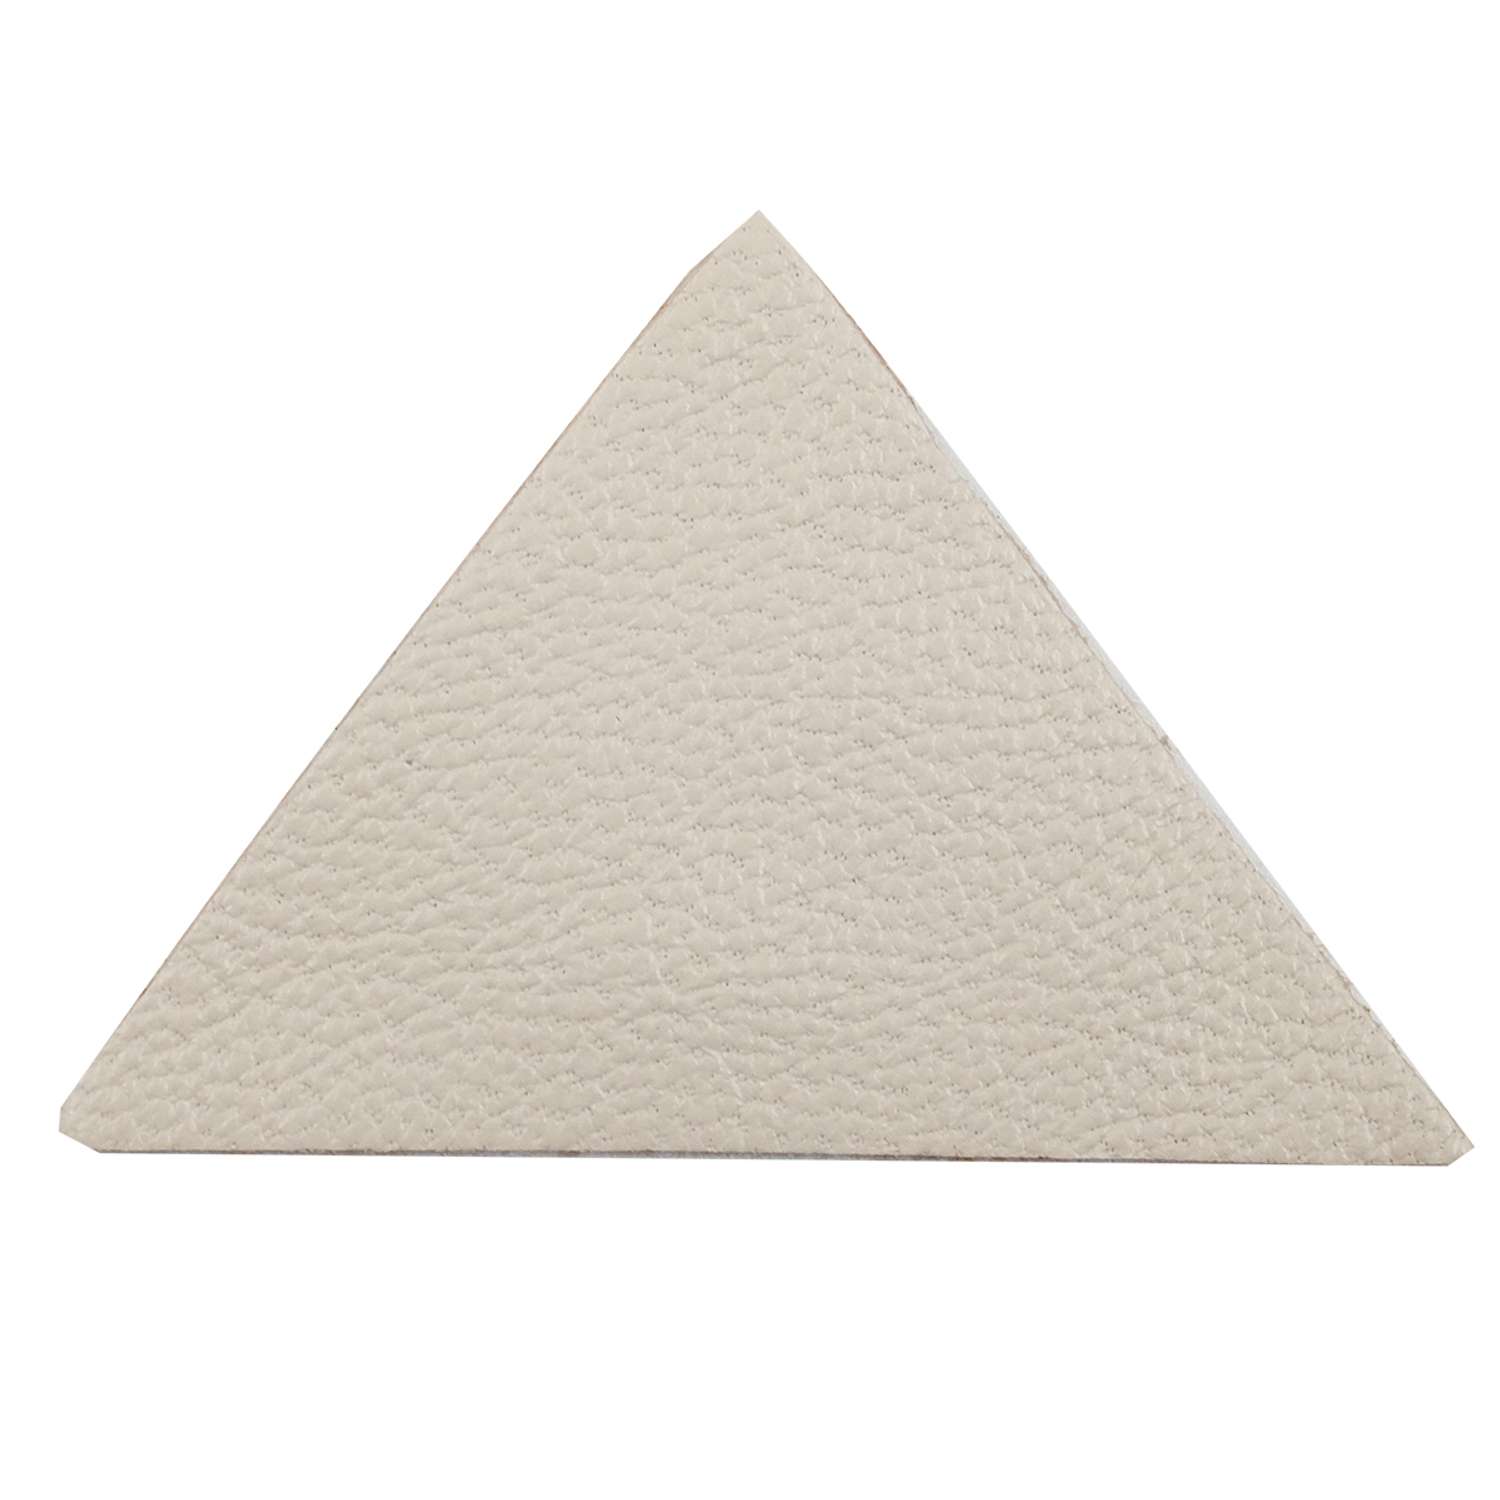 Термоаппликация Галерея нашивка заплатка Треугольник 5.9х4 см 2 шт из кожи для ремонта и украшения одежды бежевый - фото 3